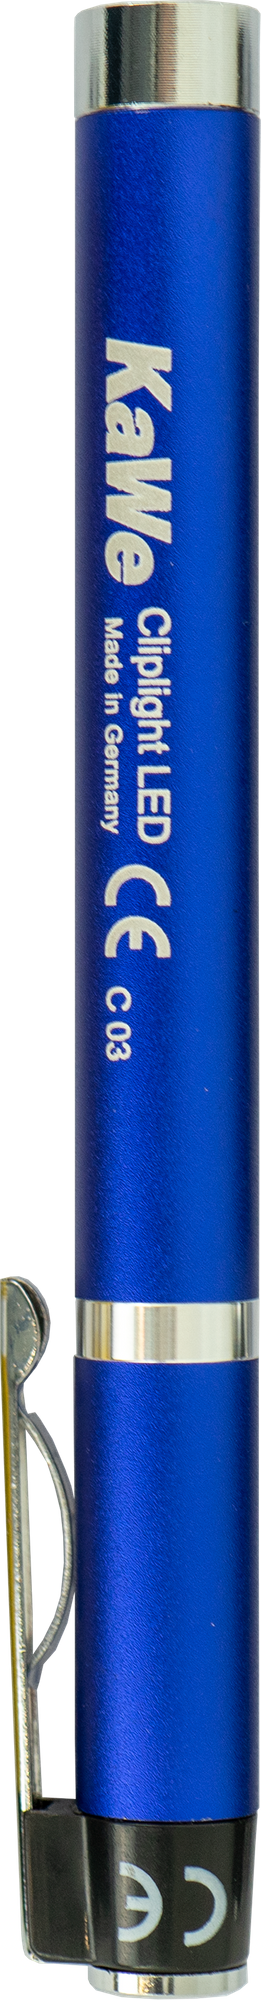 CLIPLIGHT LED Diagnostik-Leuchte, blau mit Clipkontakt (6 Stck.)